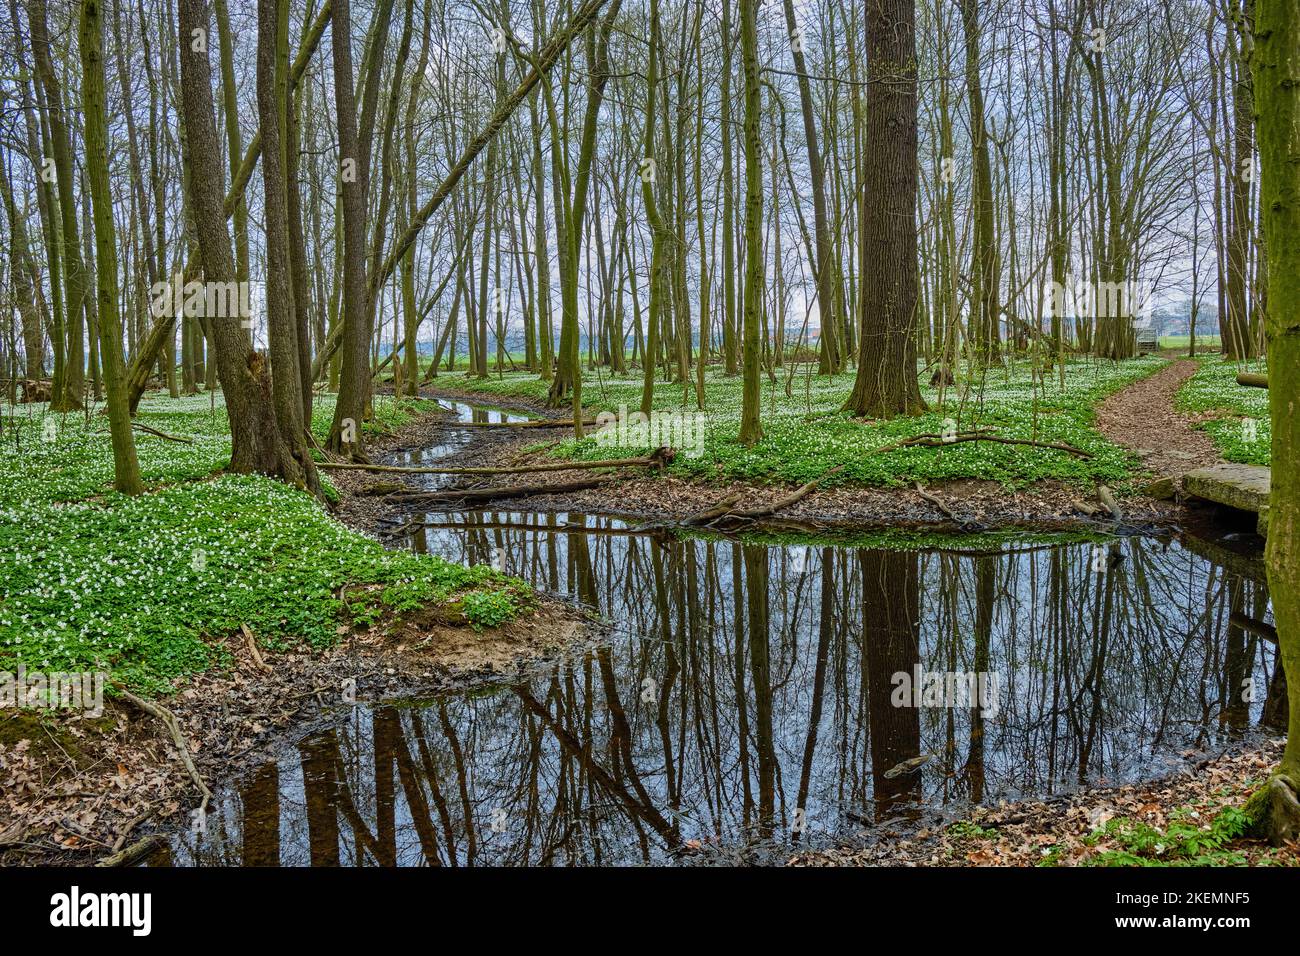 Réserve naturelle de la forêt alluviale de Laske (Lasker Auenwald) dans la région sorabe au printemps, Laske, Ralbitz-Rosenthal, Saxe, Allemagne. Banque D'Images